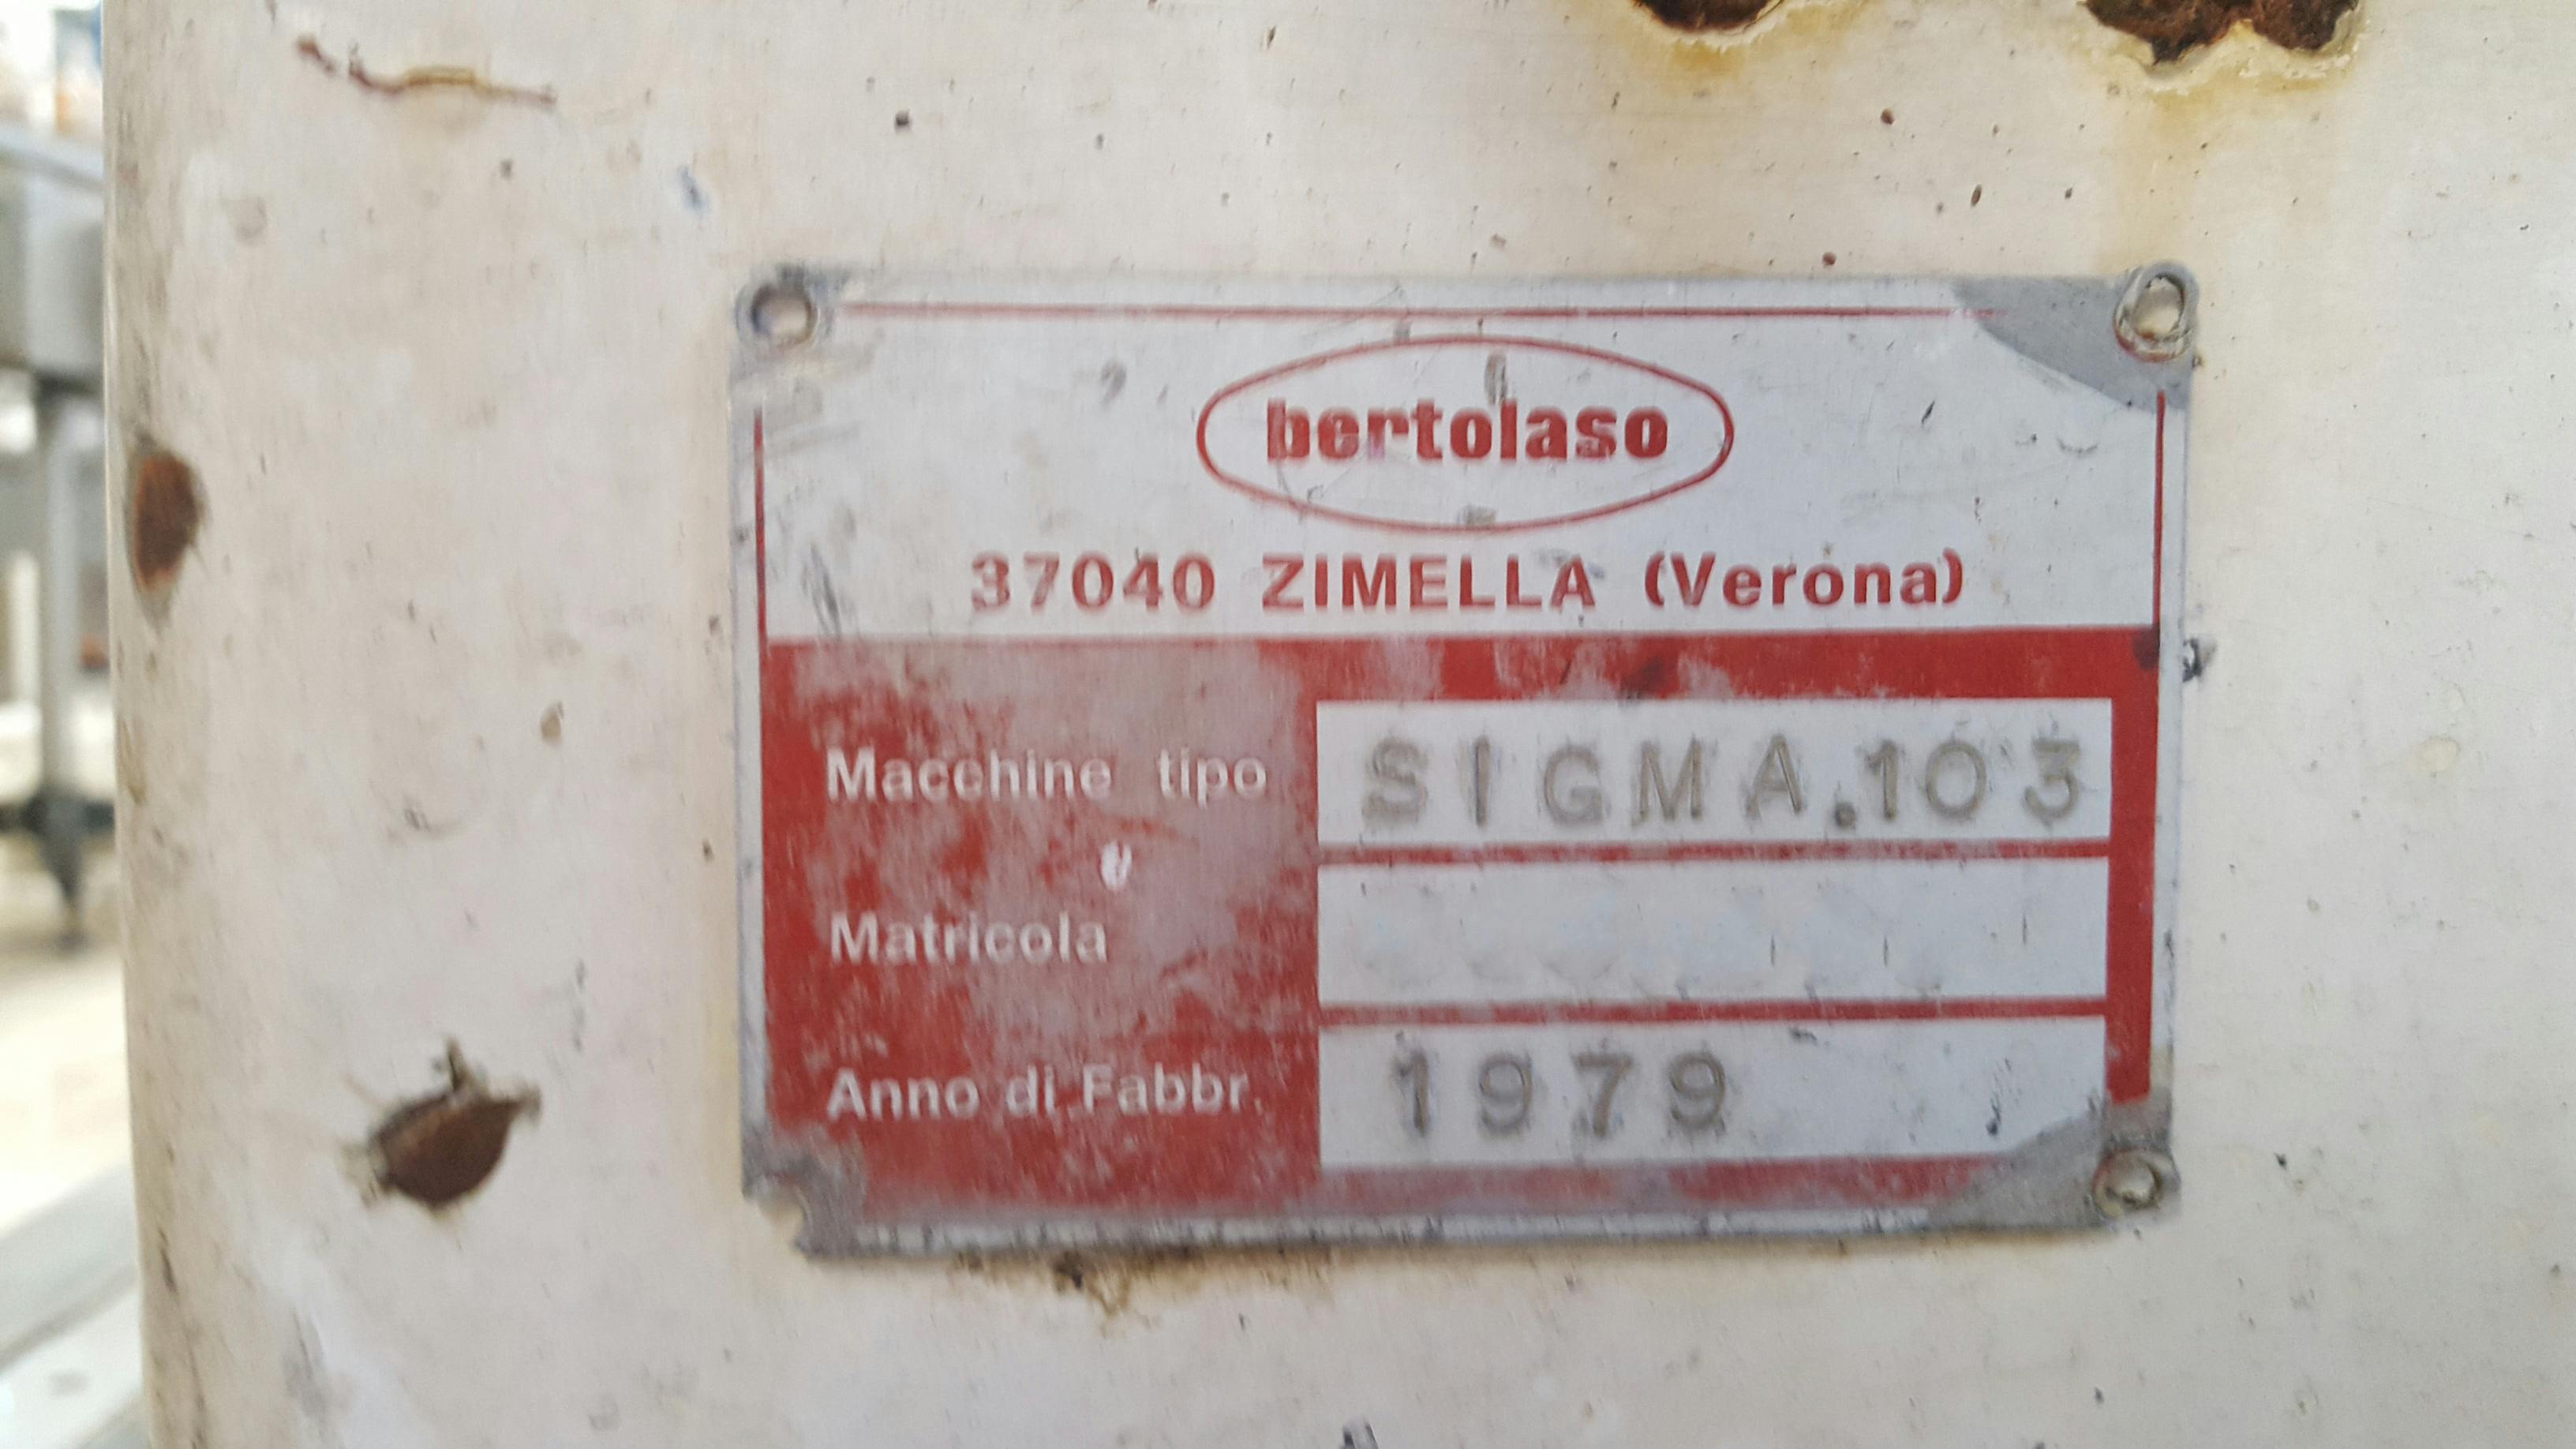 Placa de identificación of Bertolaso Sigma 103